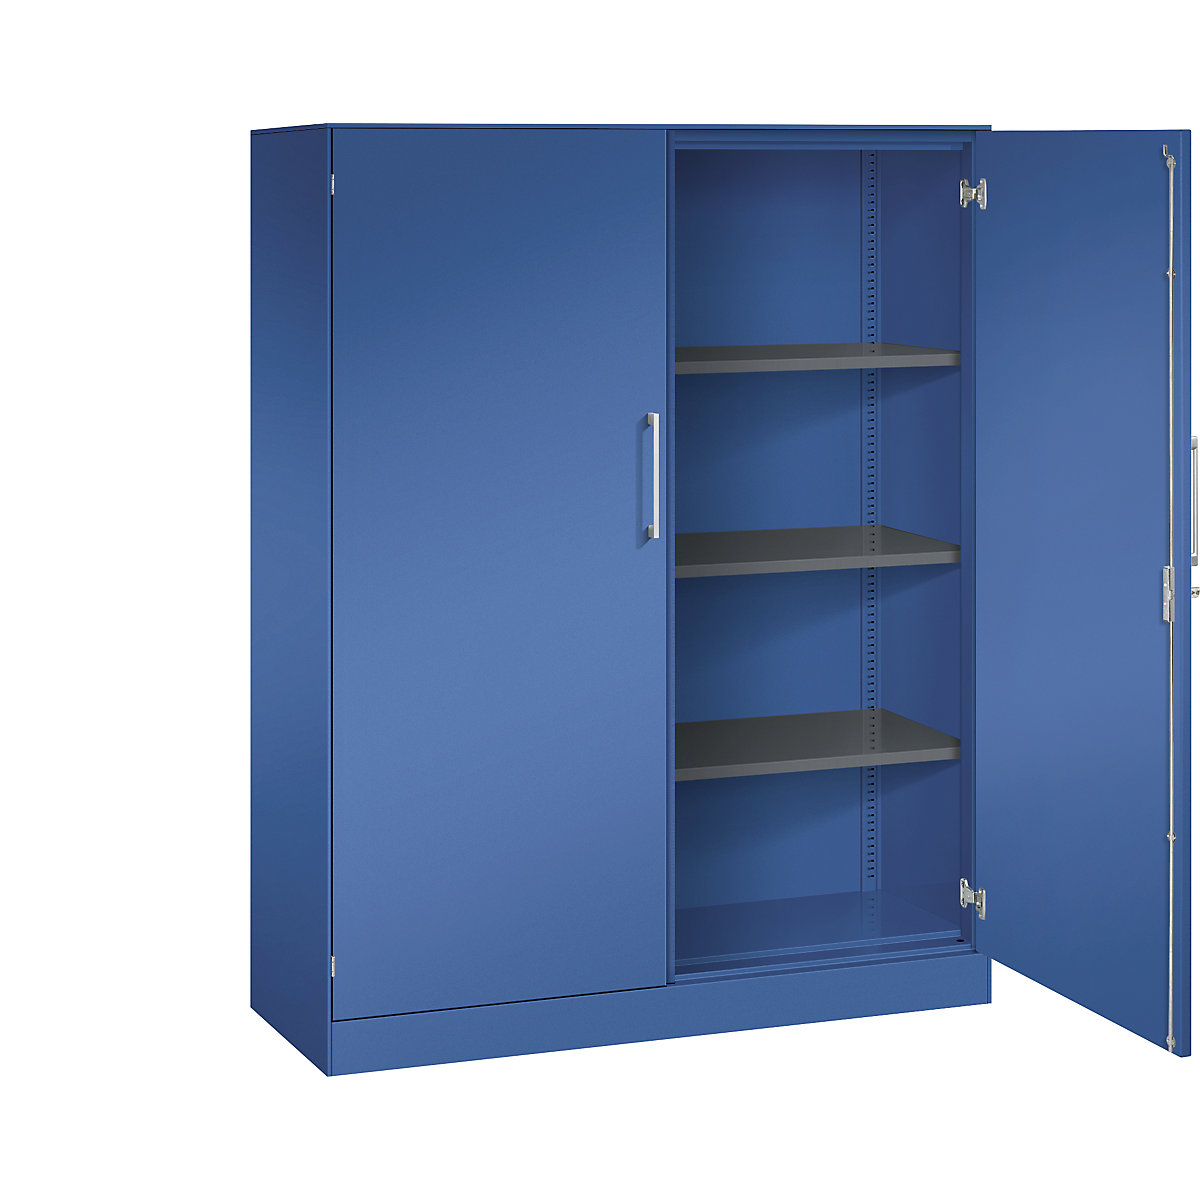 C+P – Skříň s otočnými dveřmi ASISTO, výška 1617 mm, šířka 1200 mm, 3 police, enciánová modrá/enciánová modrá